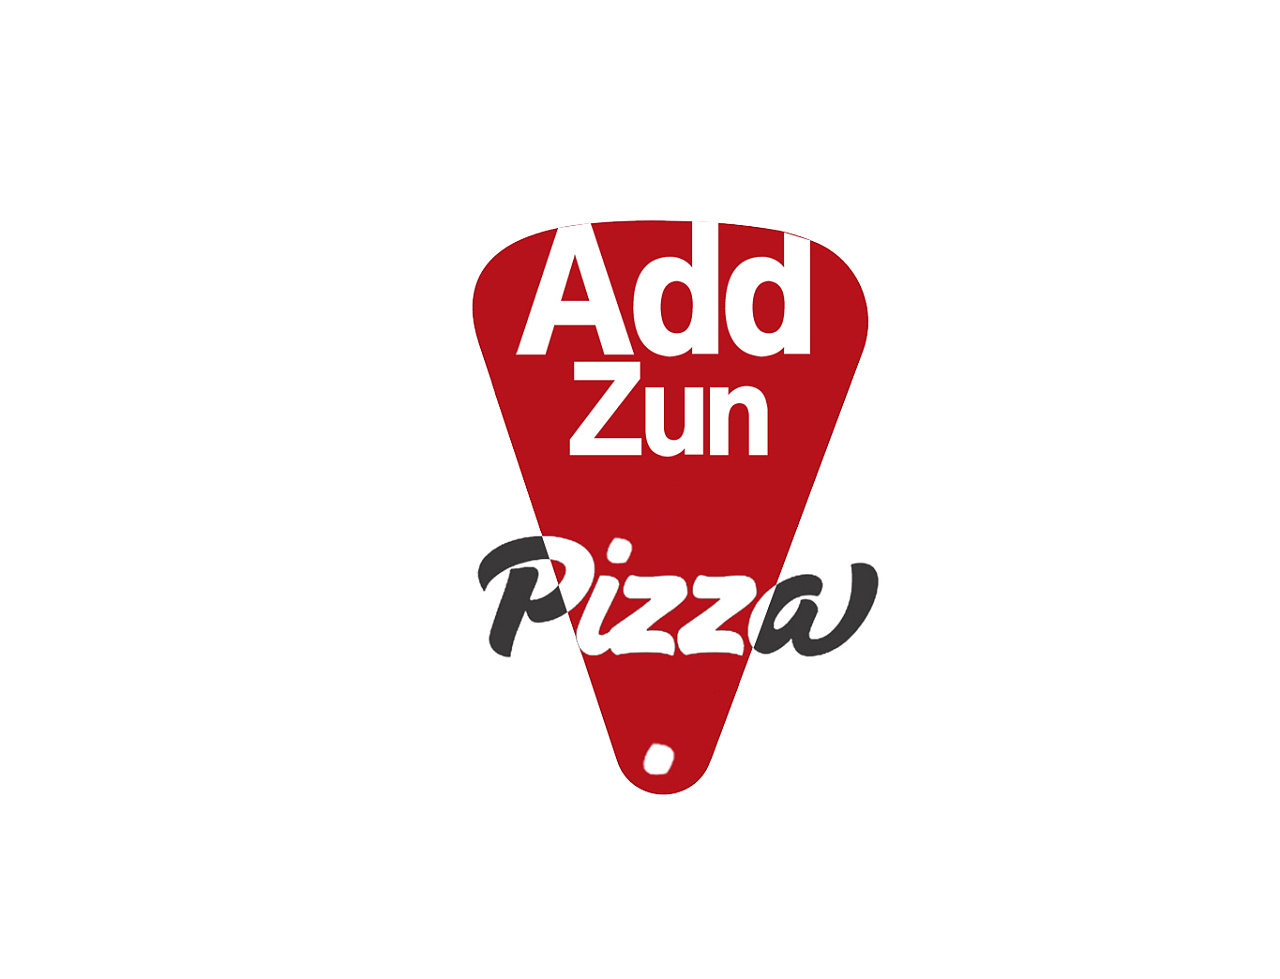 加尊披萨logo vi,披萨logo,披萨logo设计, 披萨标志